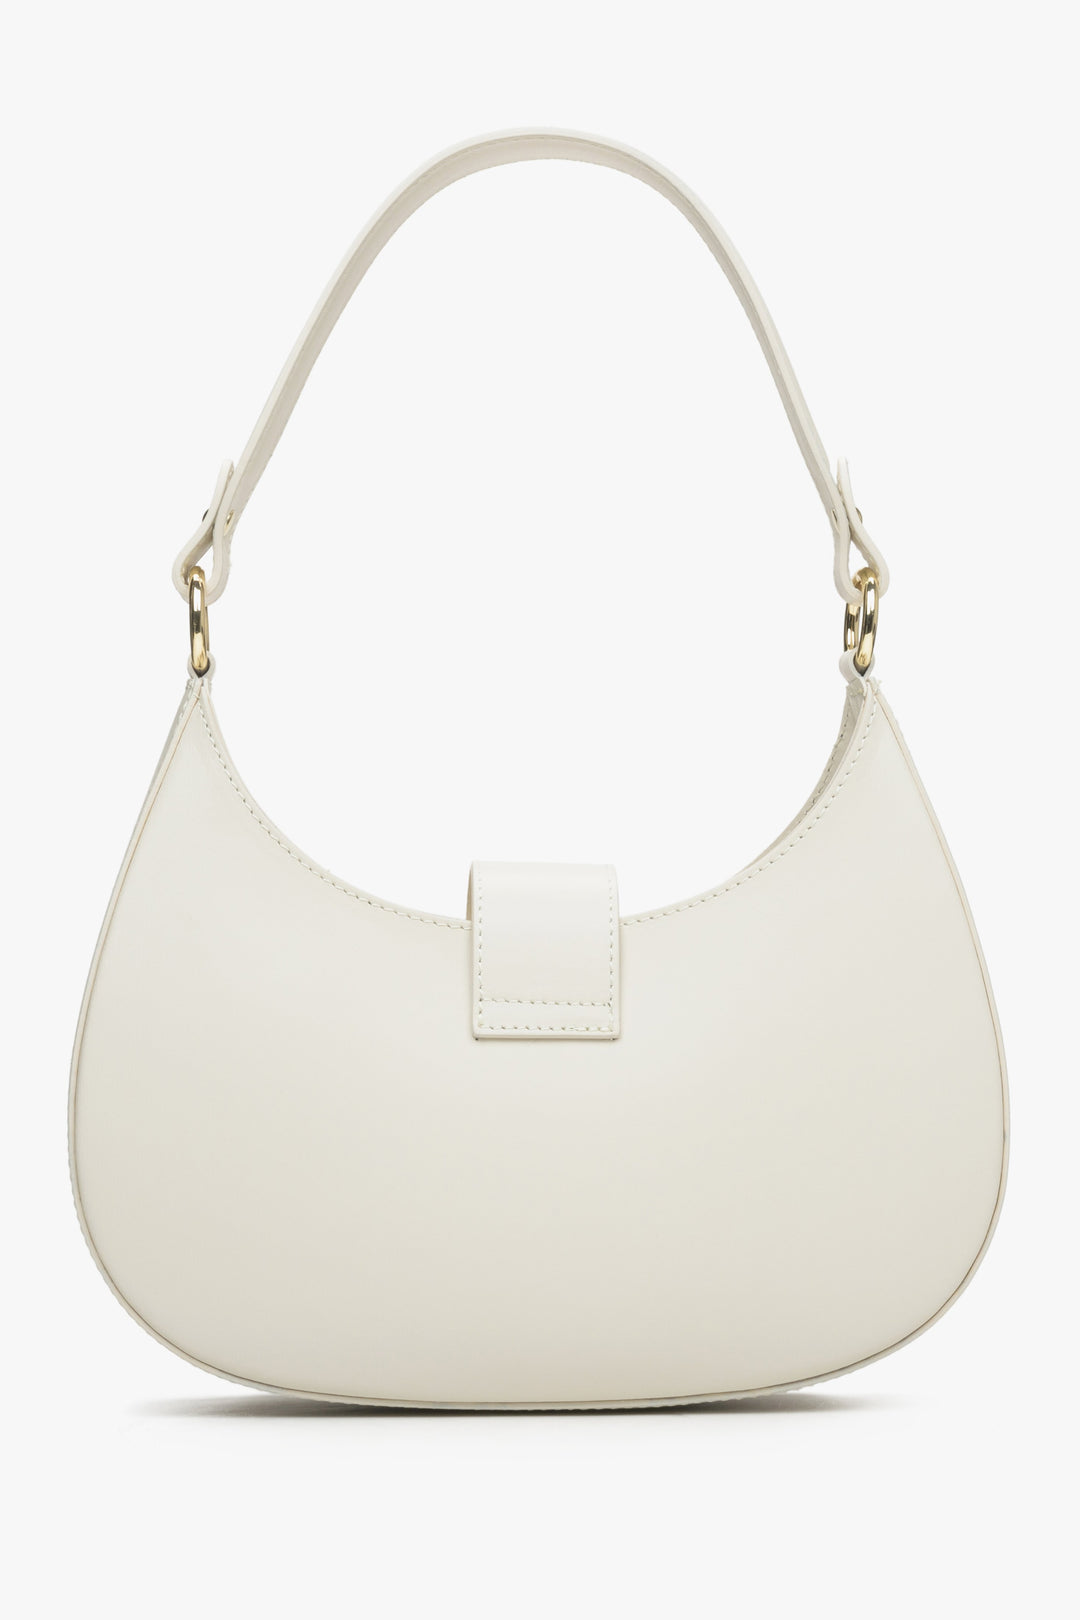 Estro women's leather handbag in milky-beige colour - reverse side.